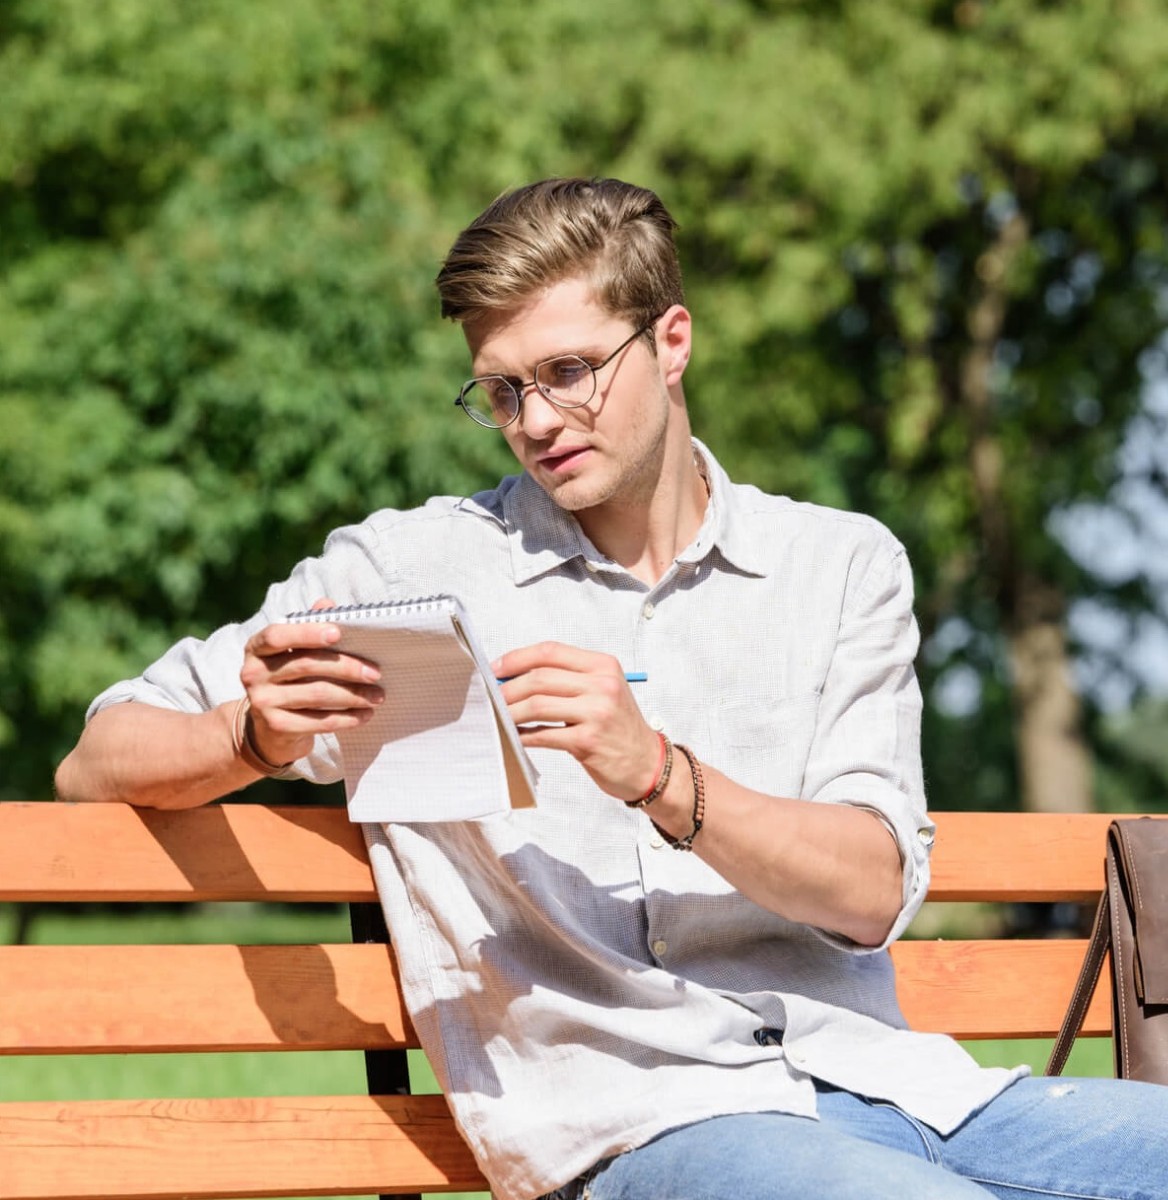 man met bril met notitieboekje en pen in de hand zittend op een bankje in het park